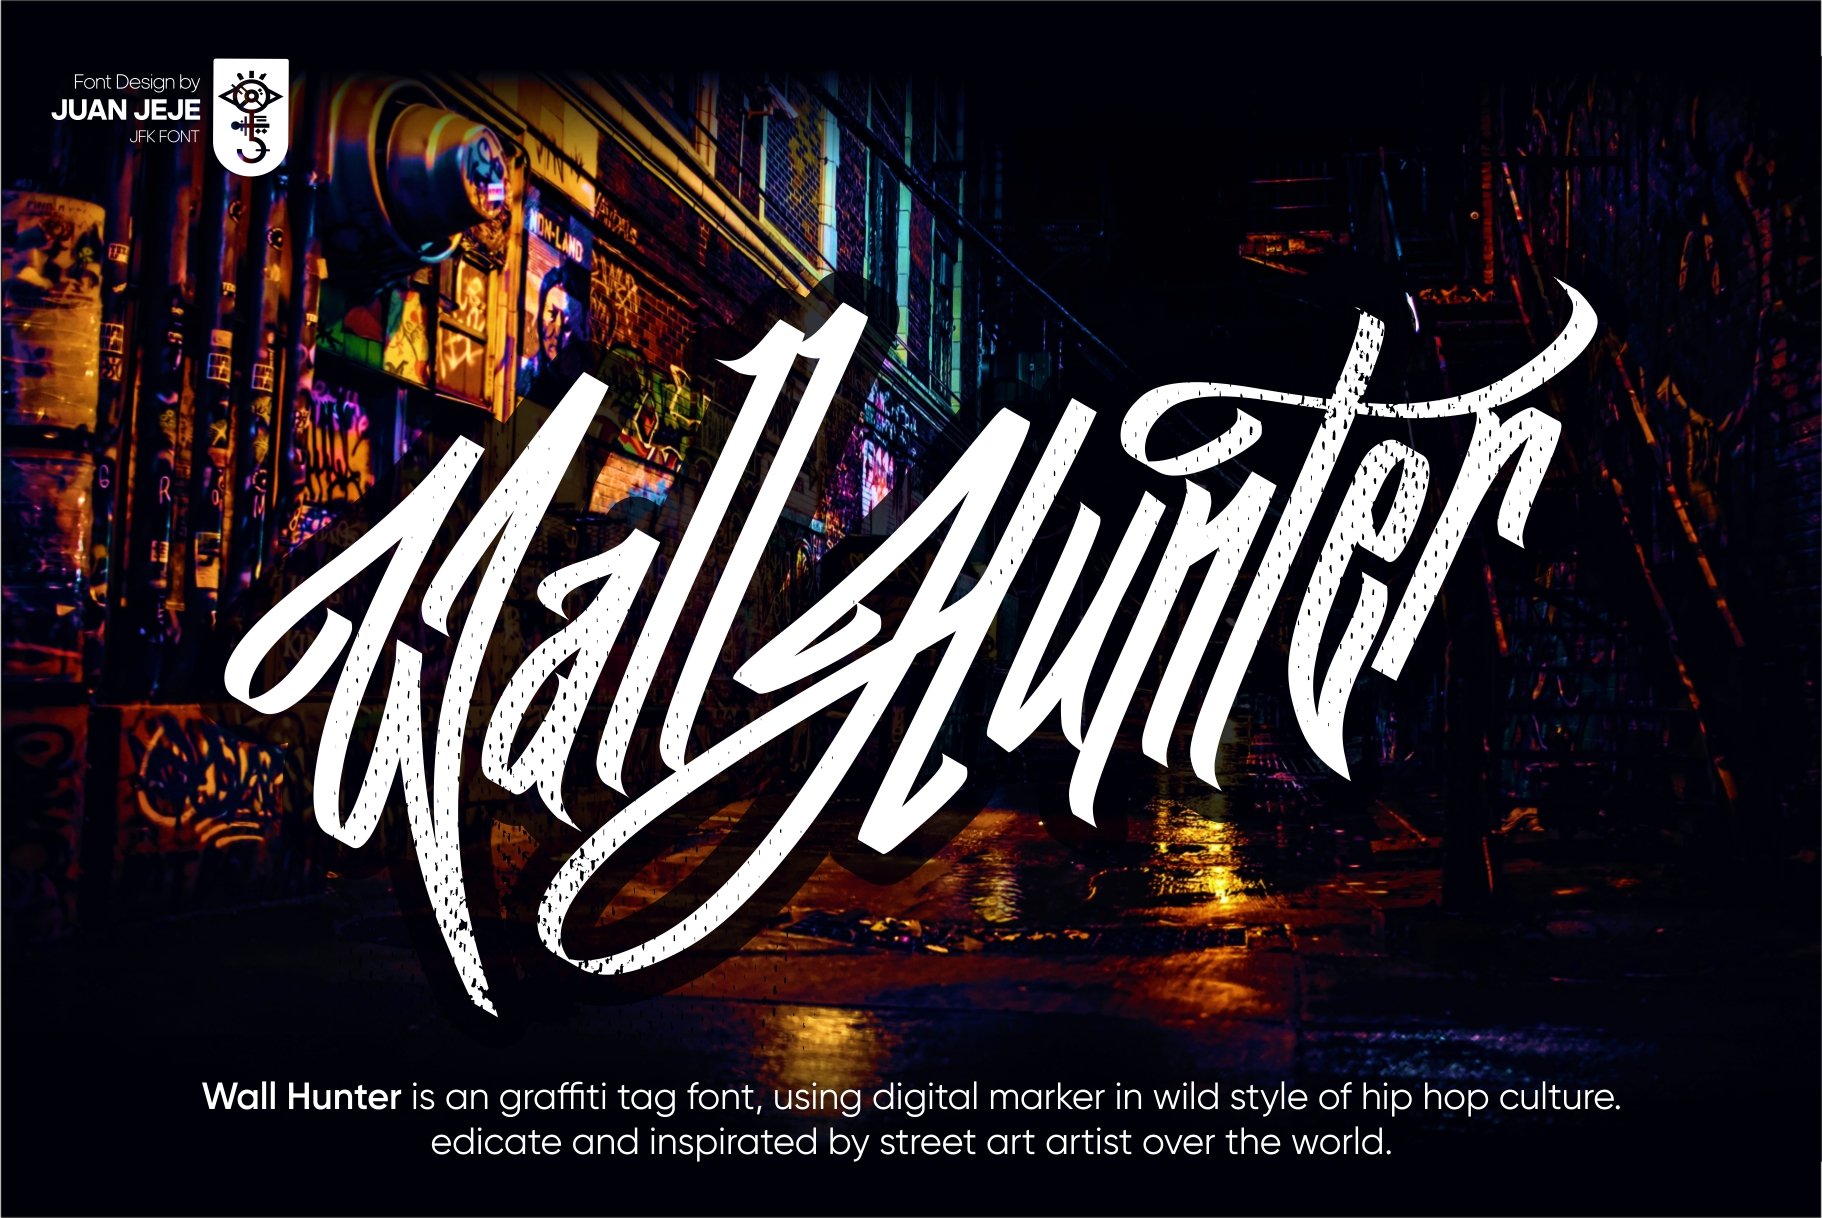 Wall Hunters | Graffiti Tag Fonts UP preview image.